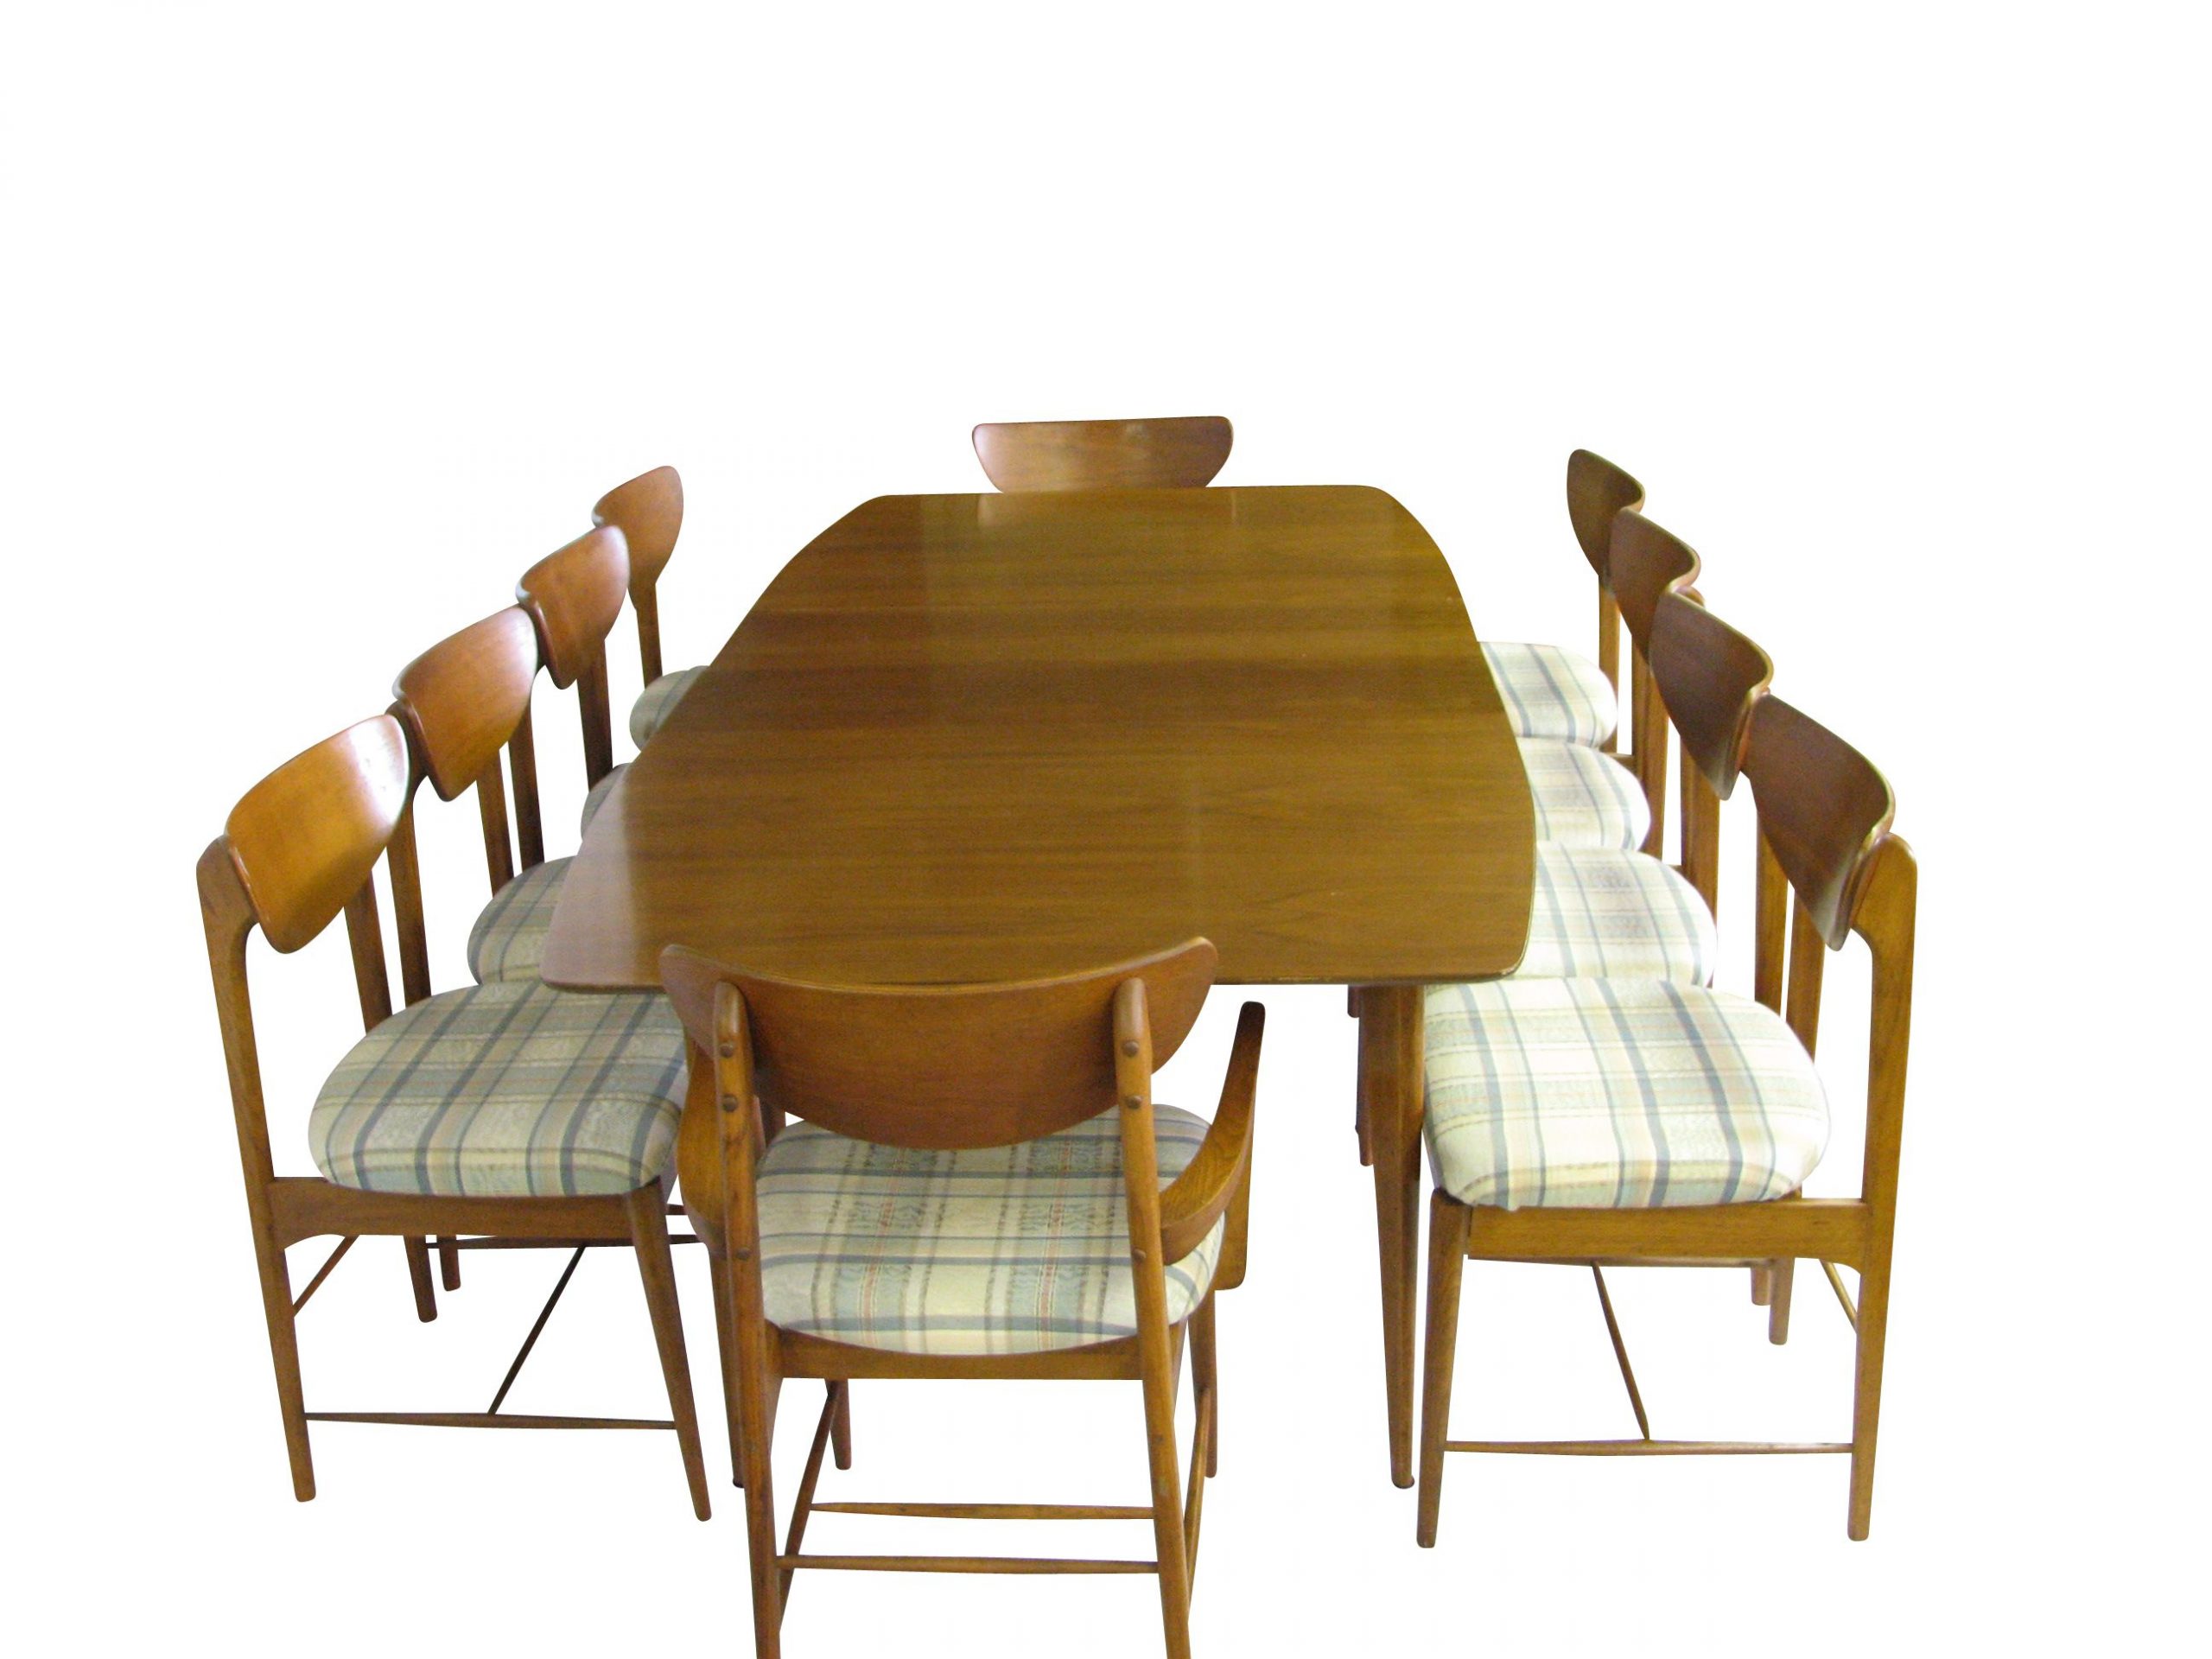 Kroehler Dining Set Dining Set Furniture Dining inside proportions 2592 X 1944